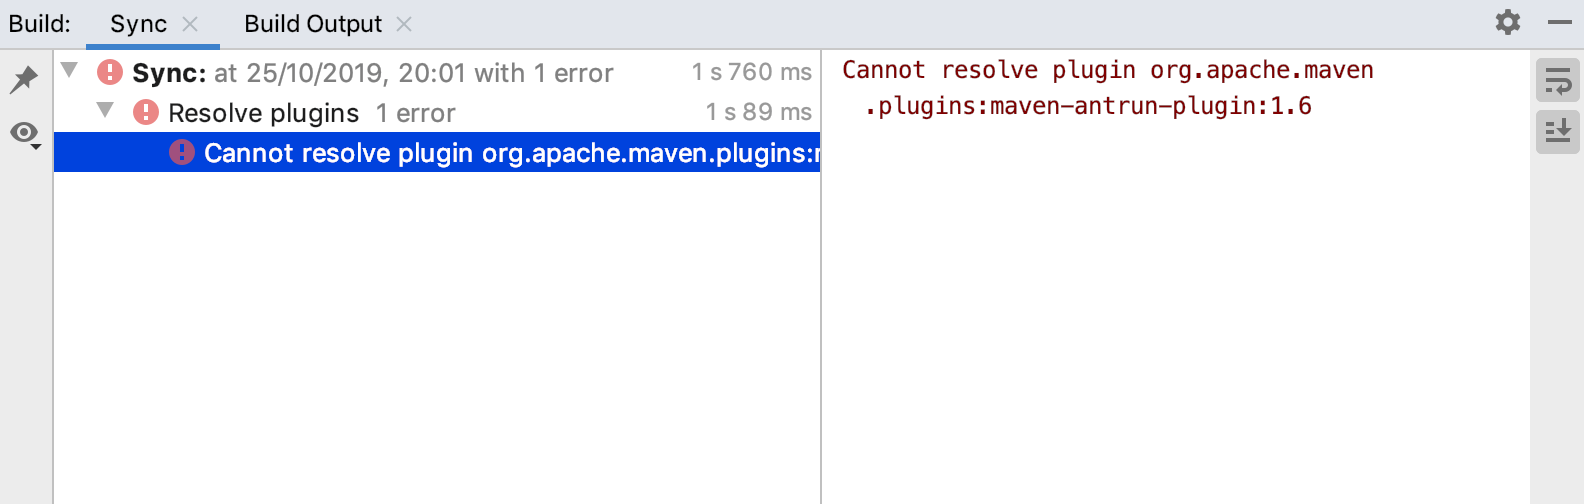 Build tool window: Error message